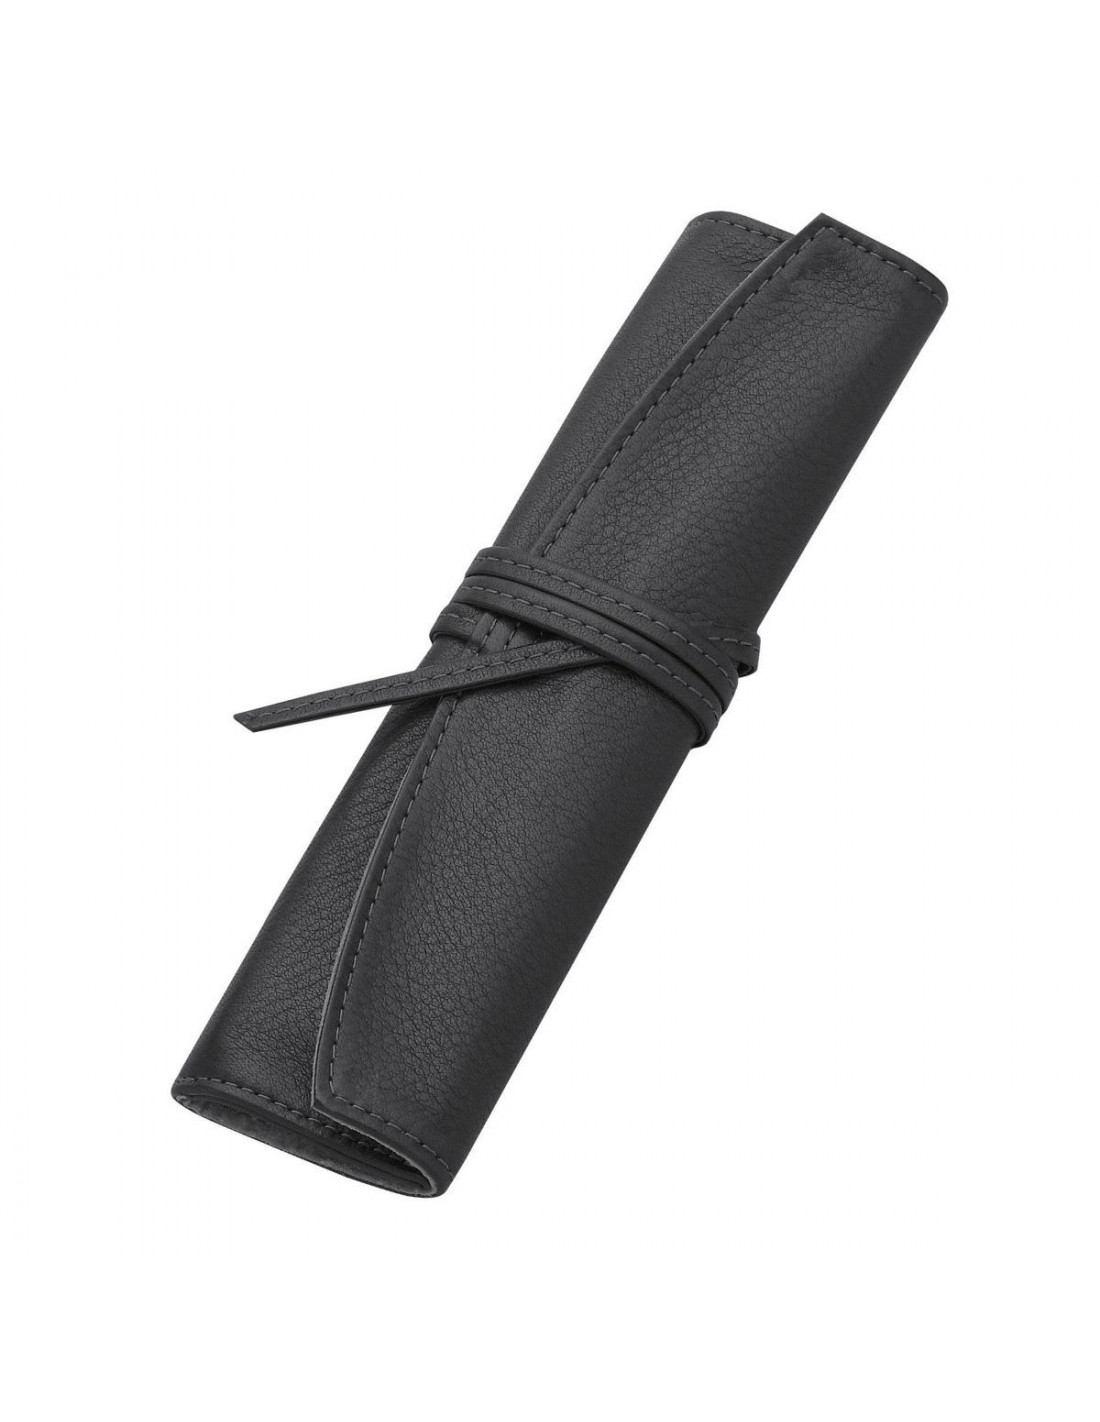 Grained Leather Pen Case - Black Size S - Pilot